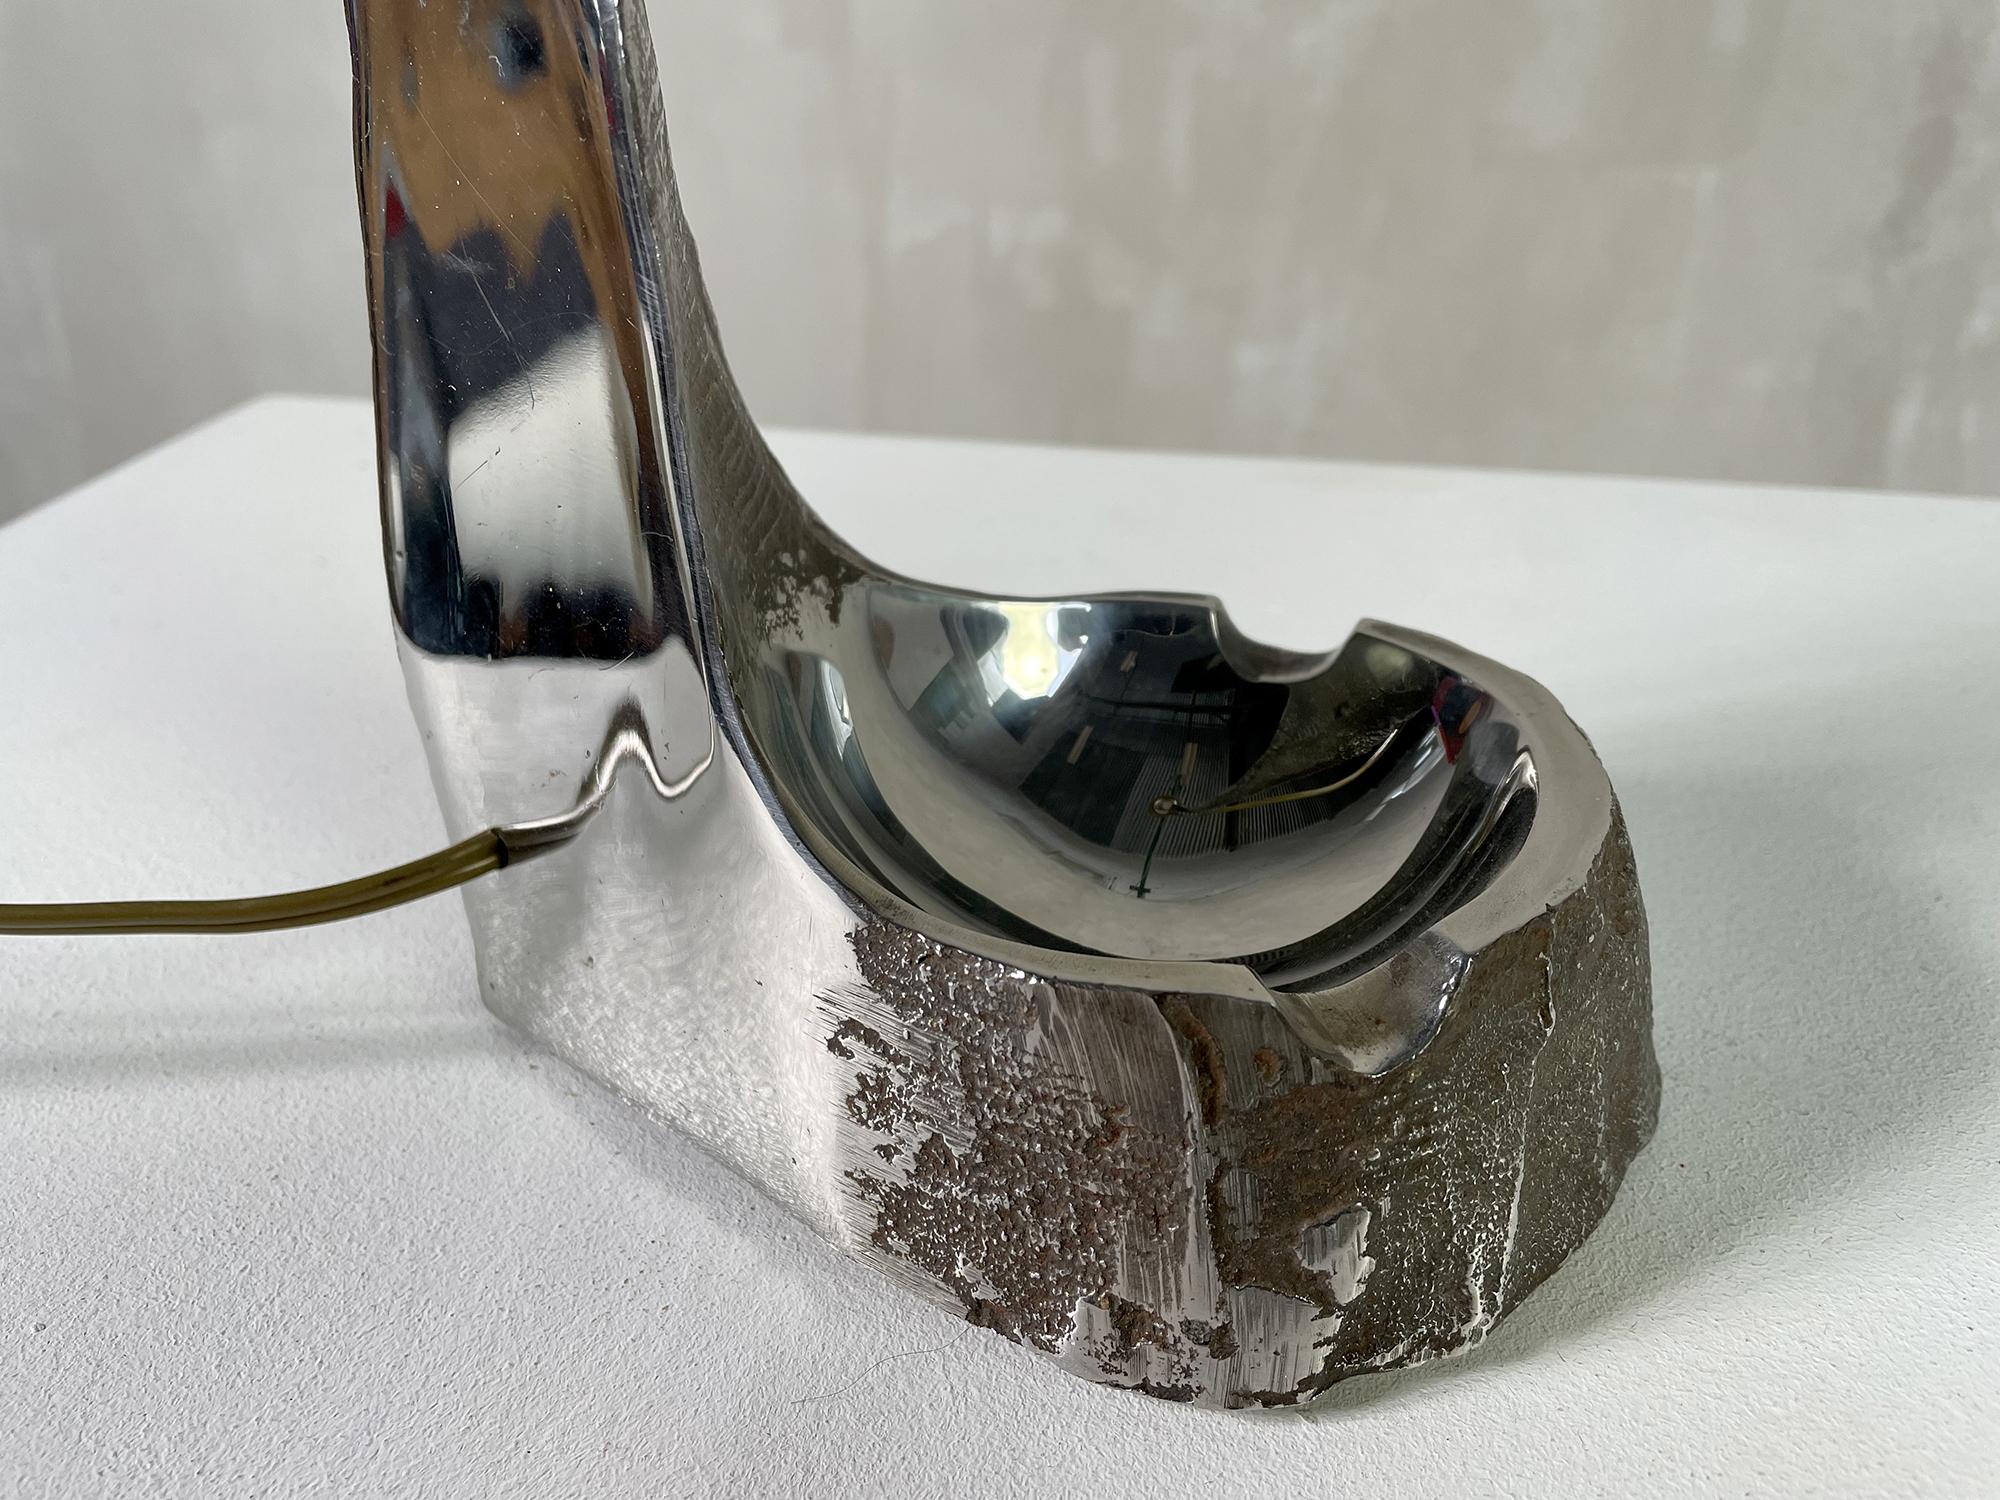 Grande lampe brutaliste en acier inoxydable massif, France 1970. Le bloc de métal a été travaillé dans la masse, poli miroir d'un côté et brut de l'autre. Un bol/cendrier forme la base. Cette lampe sculpturale est une pièce unique.
Mesure : hauteur